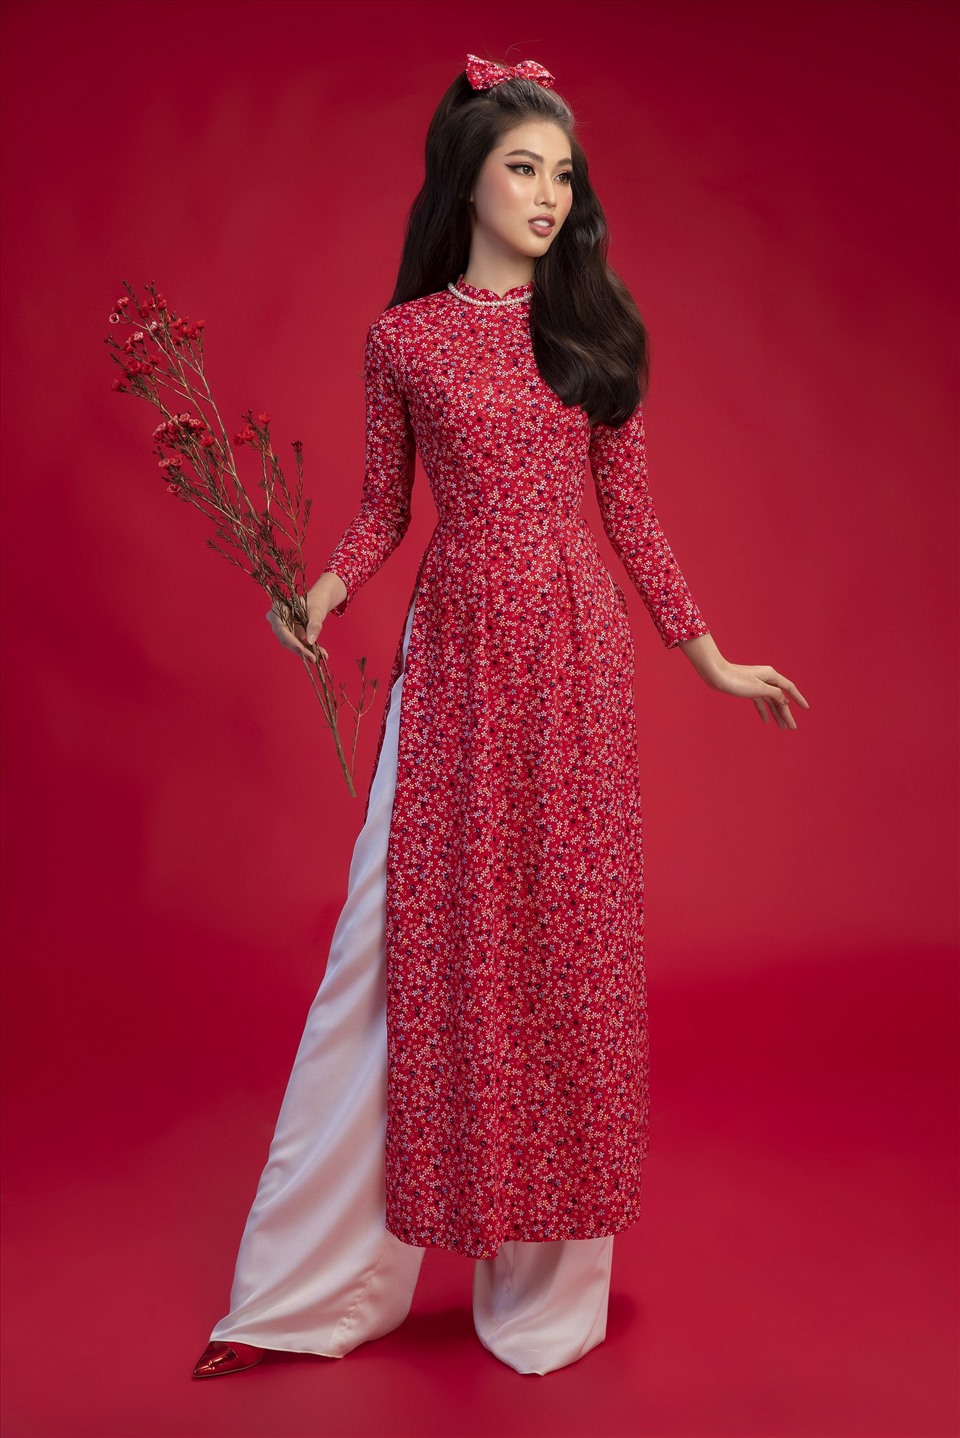 Áo dài hoa nhí đỏ phù hợp với các bạn nữ yêu thích phong cách retro của các giai nhân ngày xưa. Với trang phục này, bạn có thể để tóc xoăn lọn to giống Á hậu Ngọc Thảo hoặc cũng có thể búi cao, đánh phồng tóc và kết hợp với phụ kiện là băng đô. Ảnh: SV.